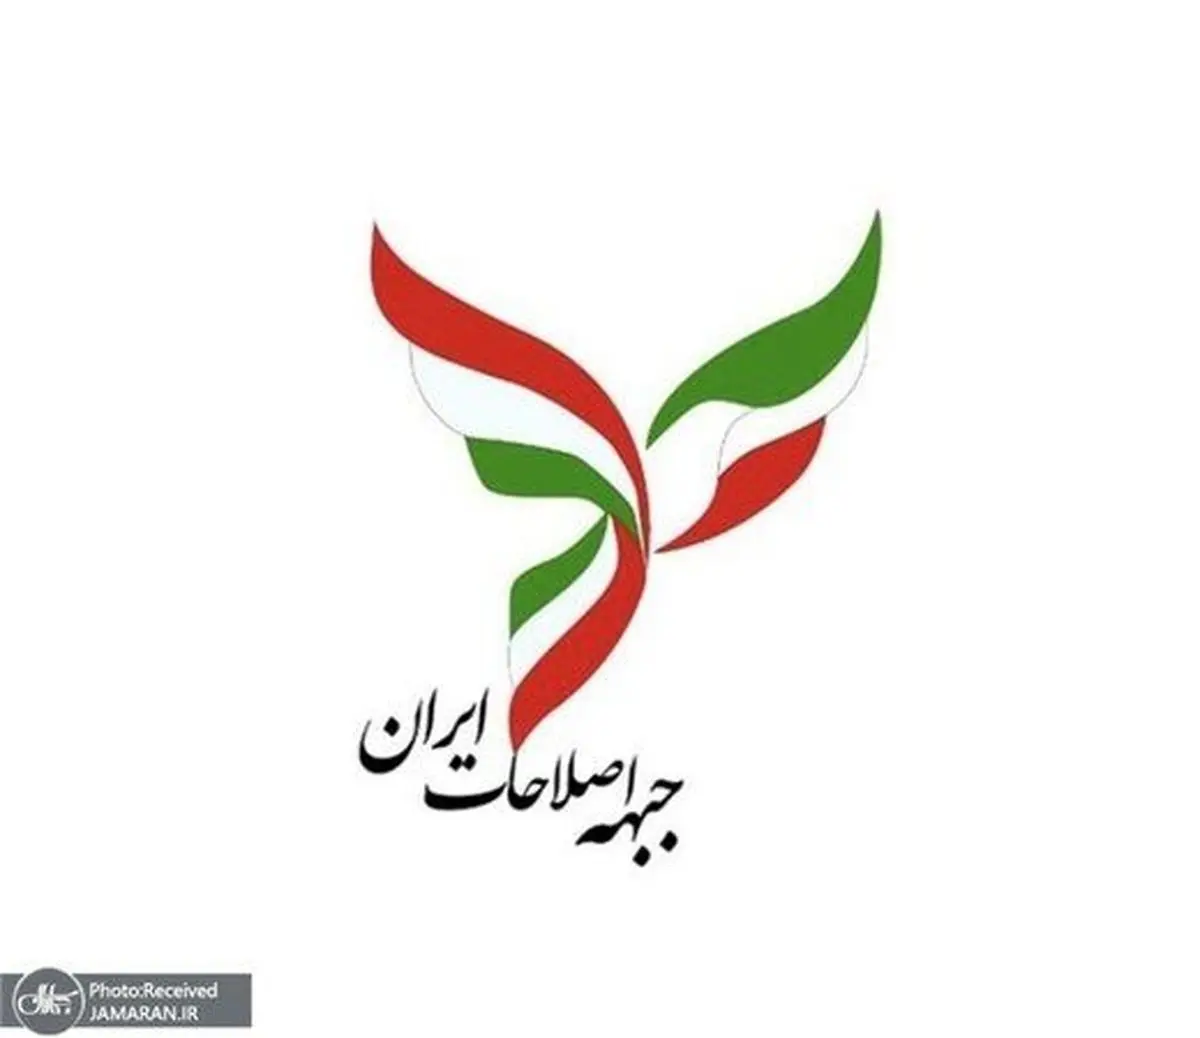 اصلاحات  از همتی و مهر علیزاده حمایت نکرد |  کاندیدایی نداریم!